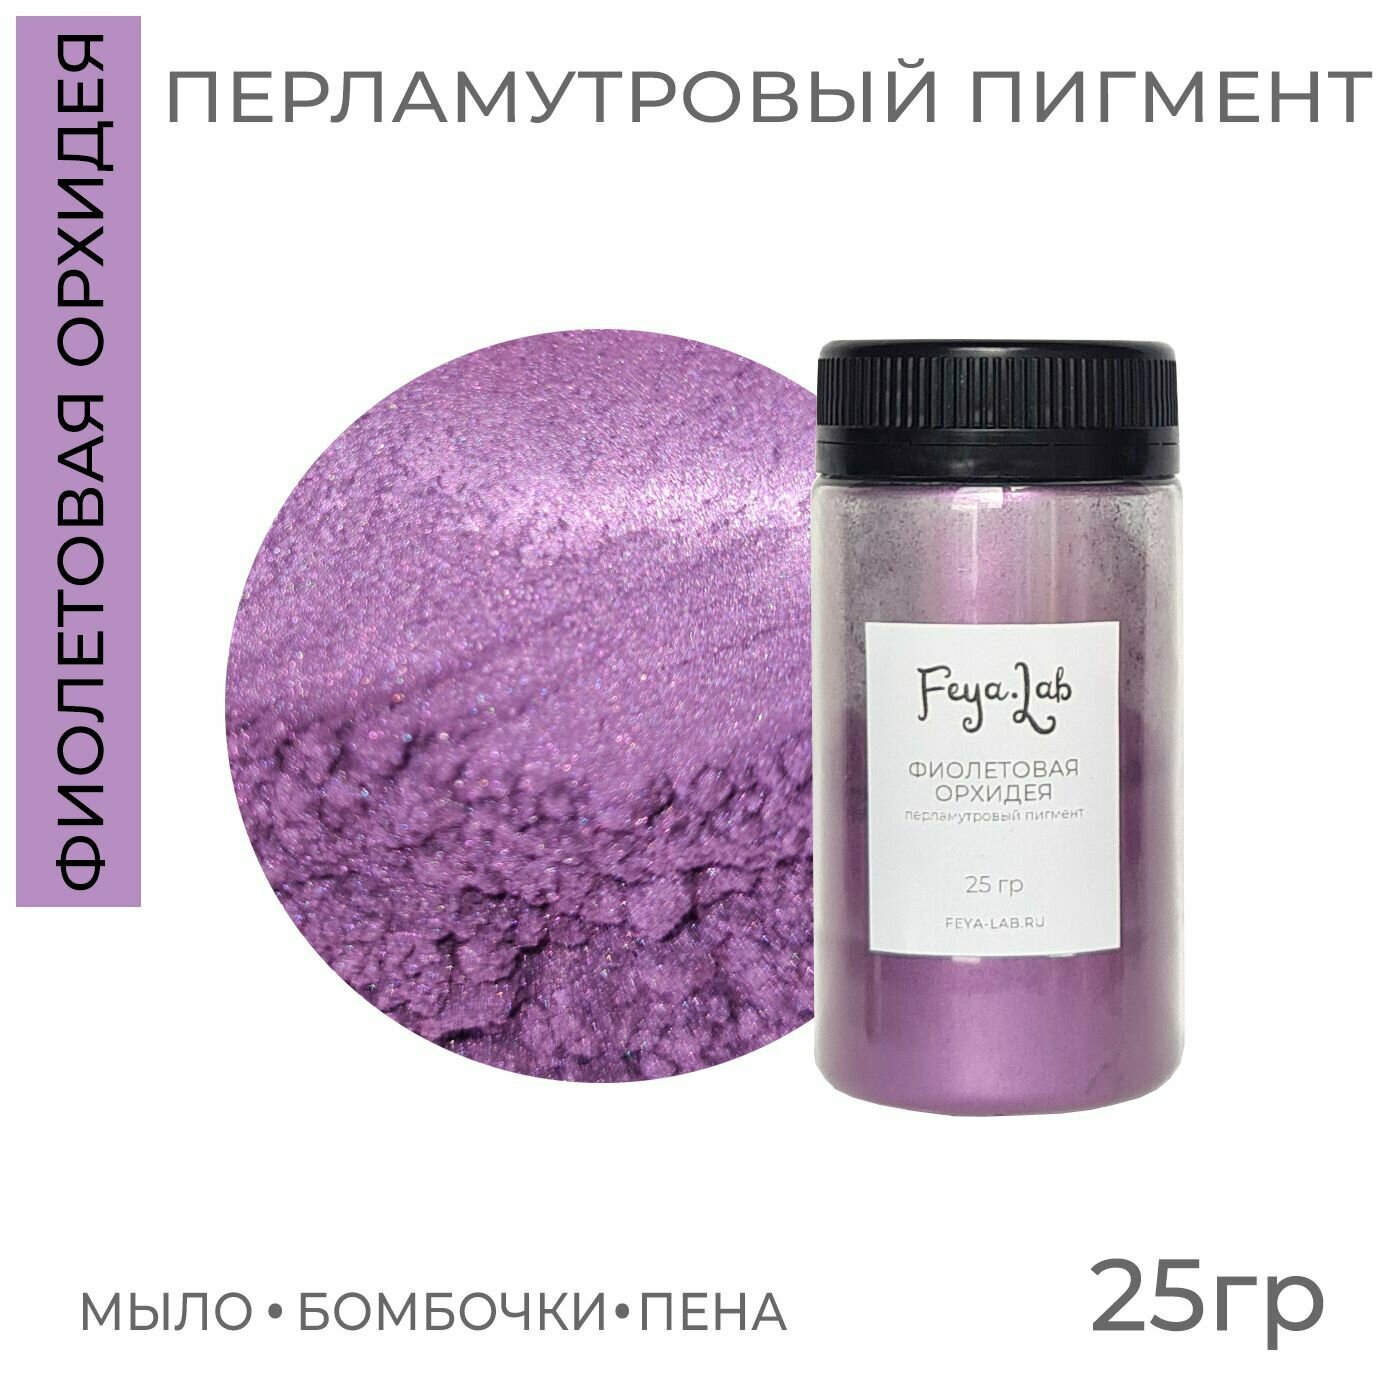 Перламутровый пигмент Фиолетовая орхидея, 25 гр